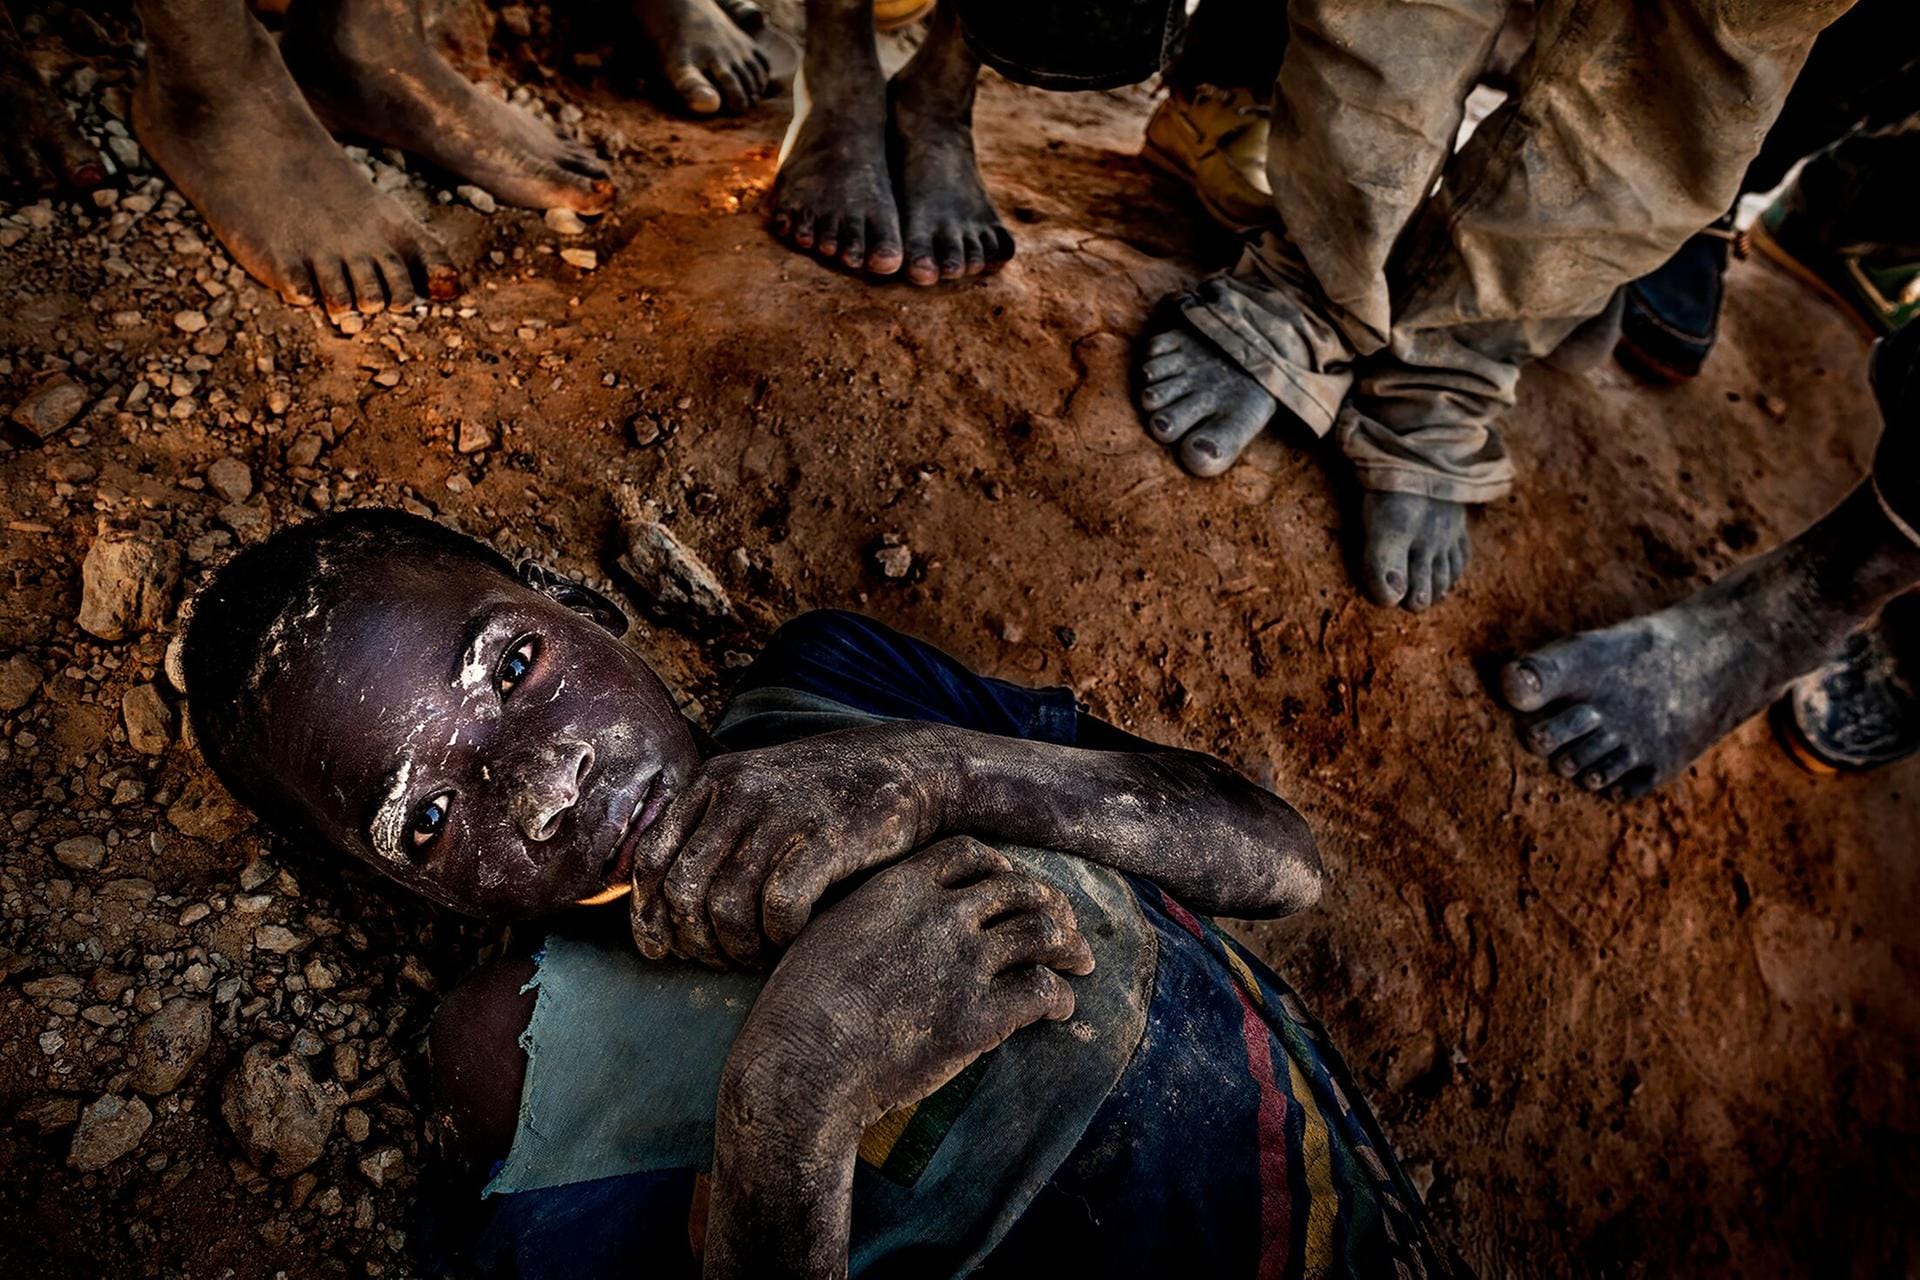 Dritter Platz beim Unicef-Foto des Jahres 2019: Ein kleiner Junge liegt erschöpft auf der Erde einer Goldmine in Burkina Faso.